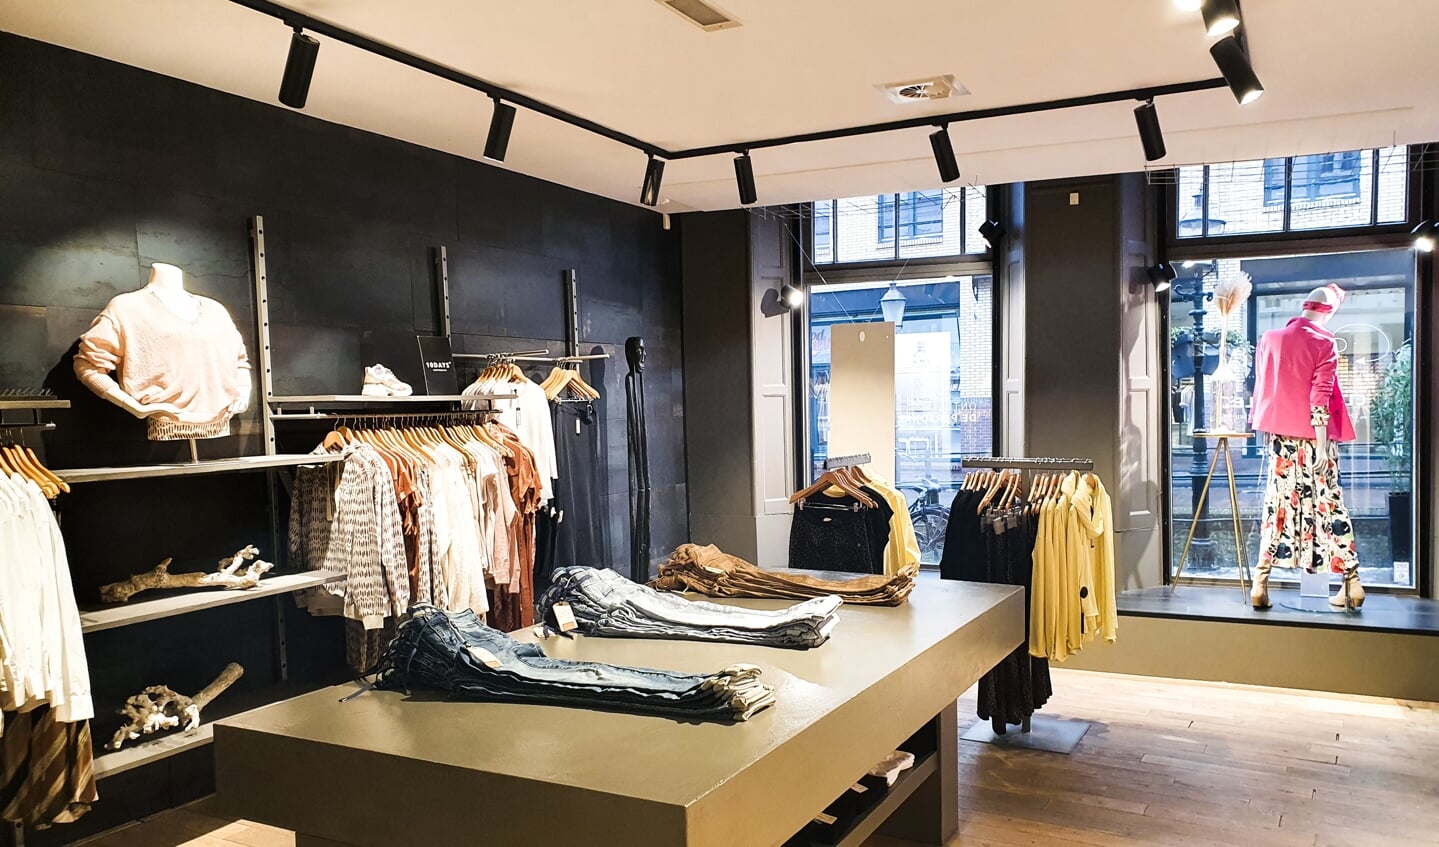 Persoonlijk contact in nieuw jasje bij winkelketen Arthur & Willemijn